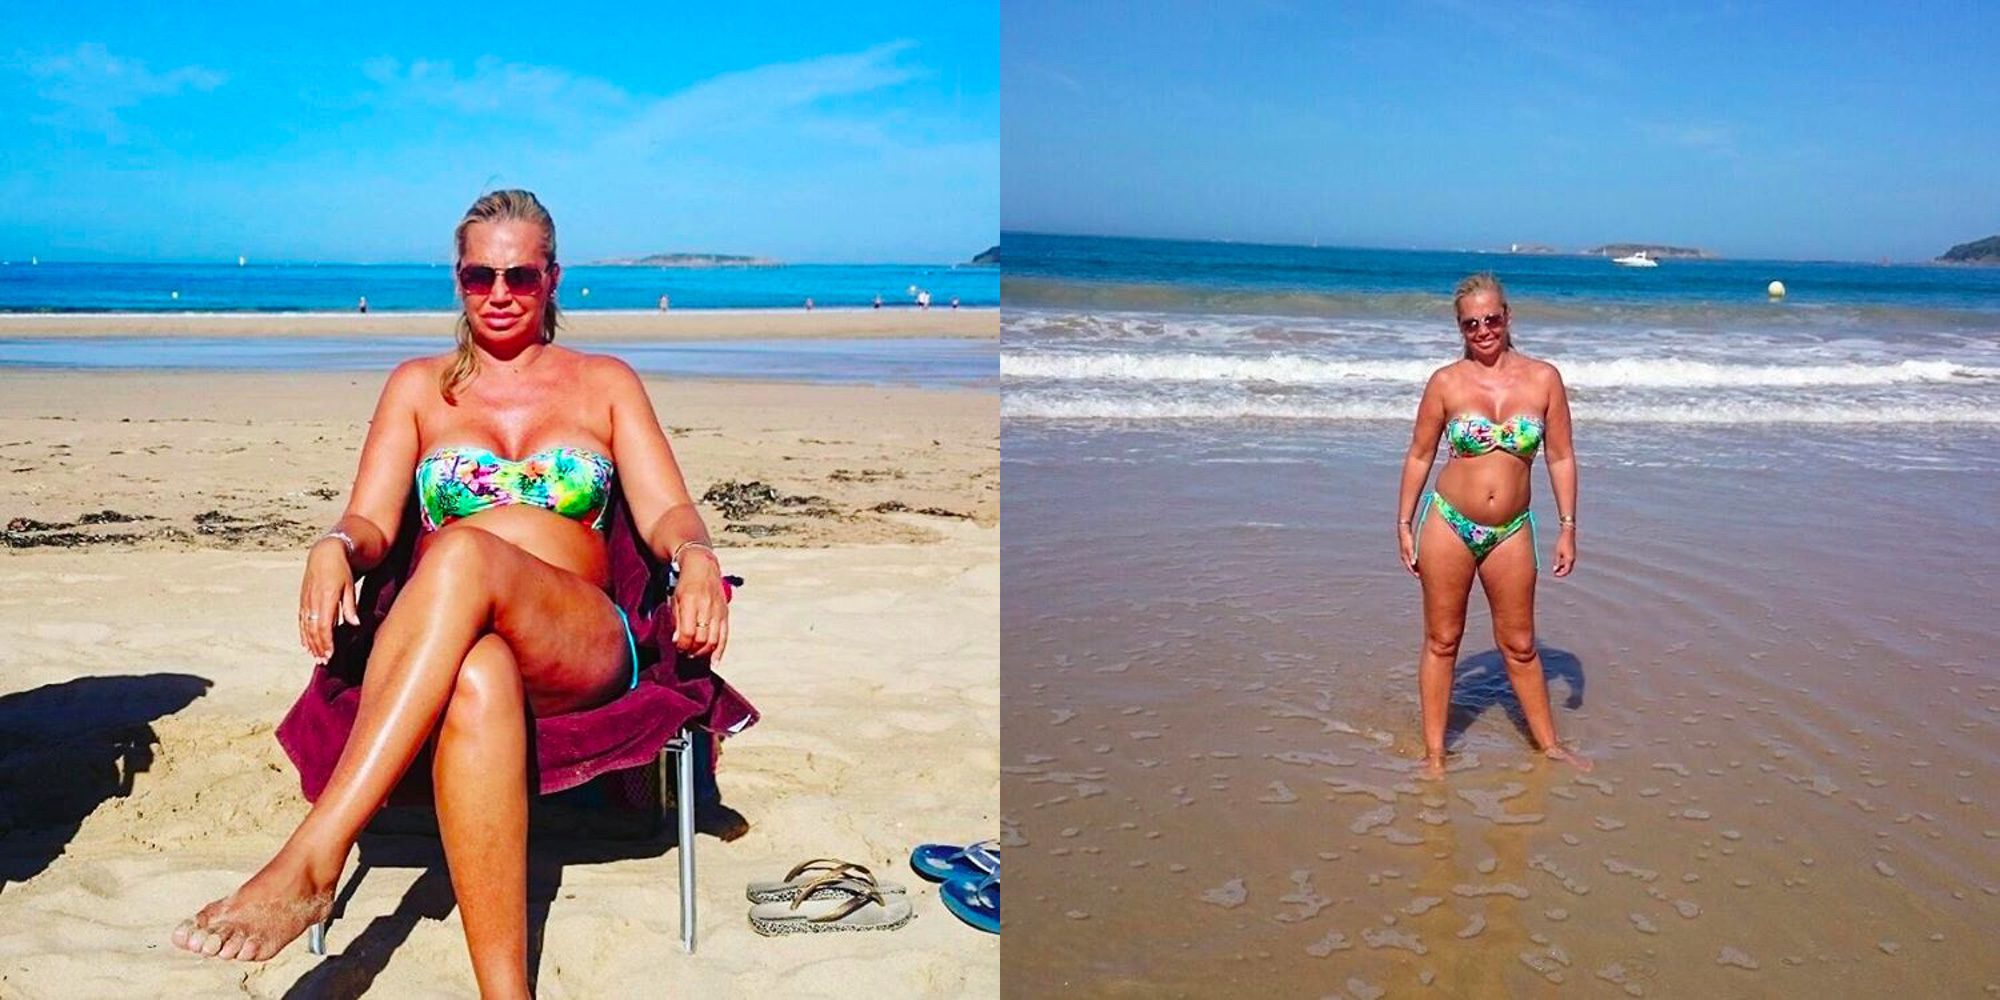 Belén Esteban muy relajada en sus vacaciones luciendo cuerpo entre la playa y la piscina